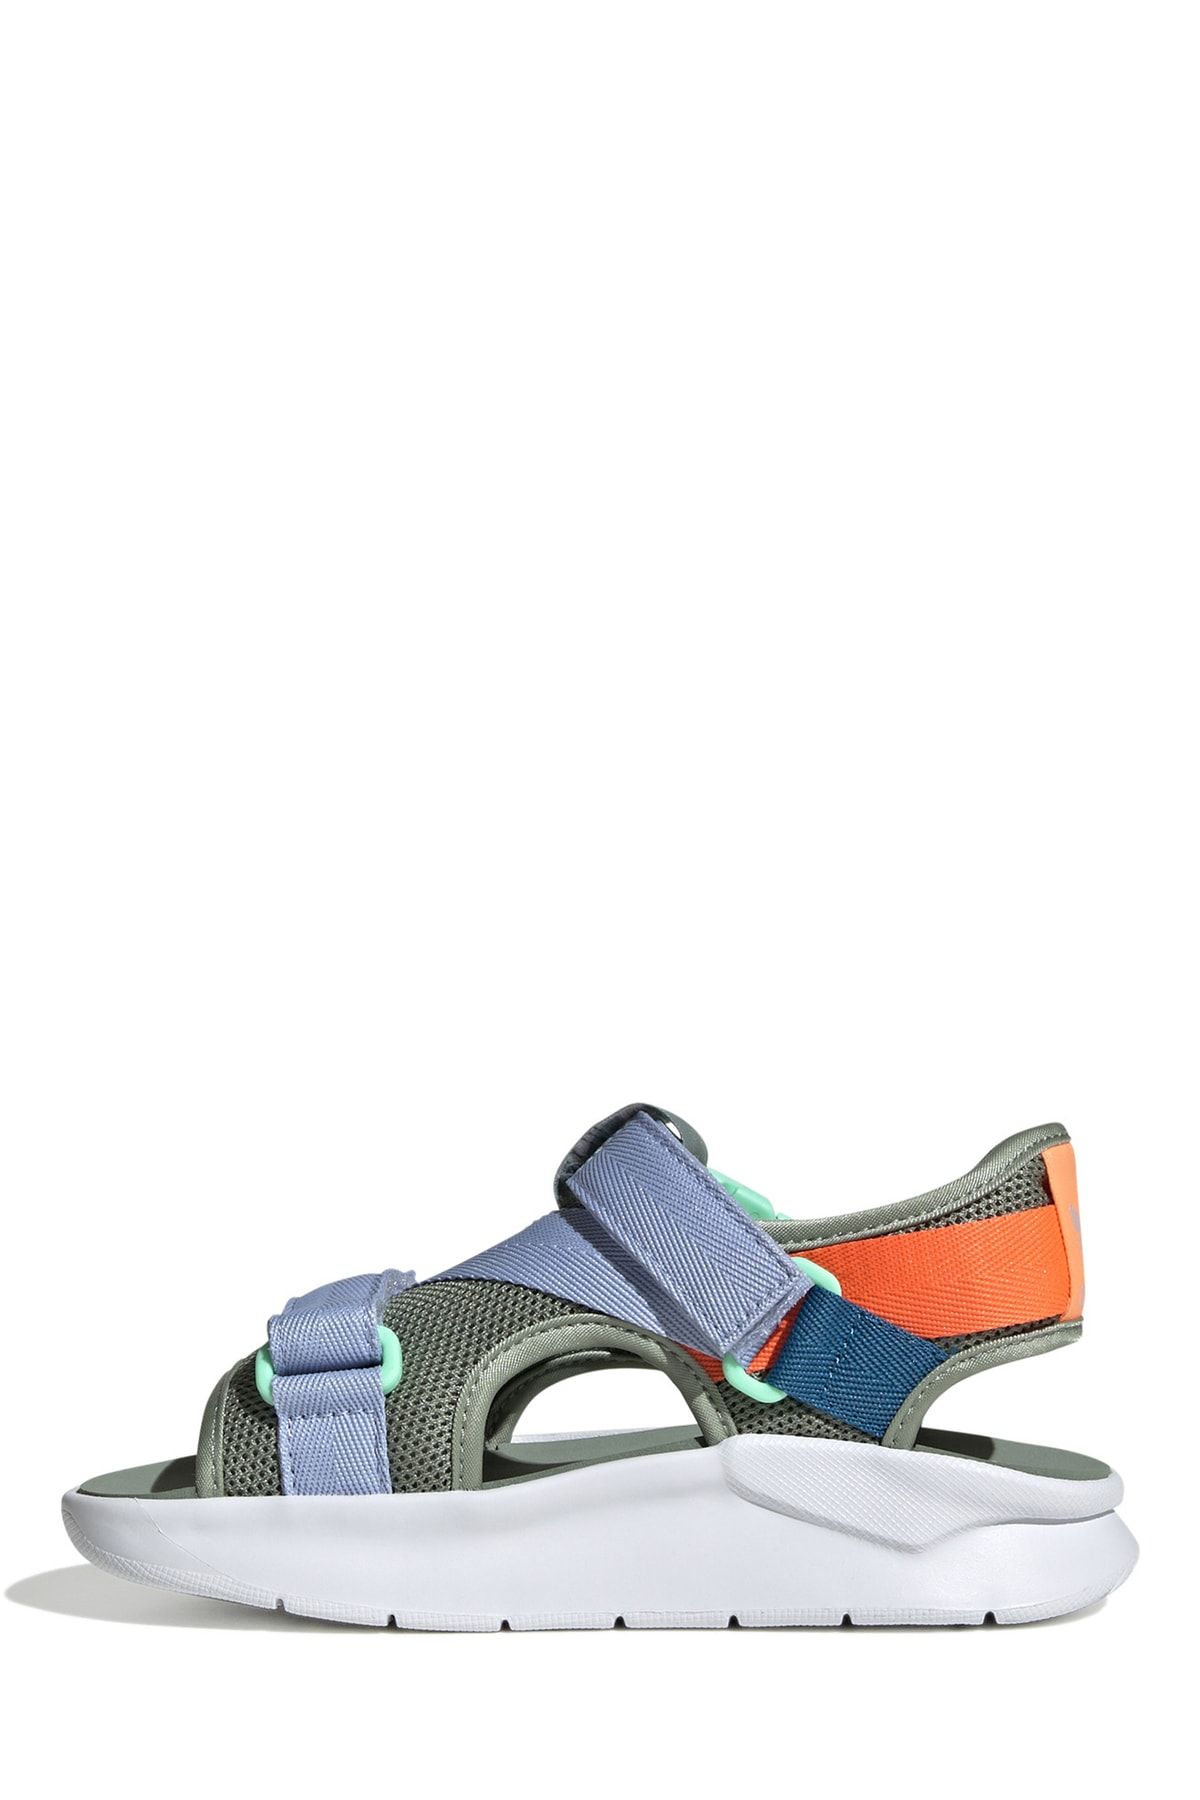 adidas Mavi - Yeşil Erkek Çocuk Sandalet GW2156 360 SANDAL 3.0 C